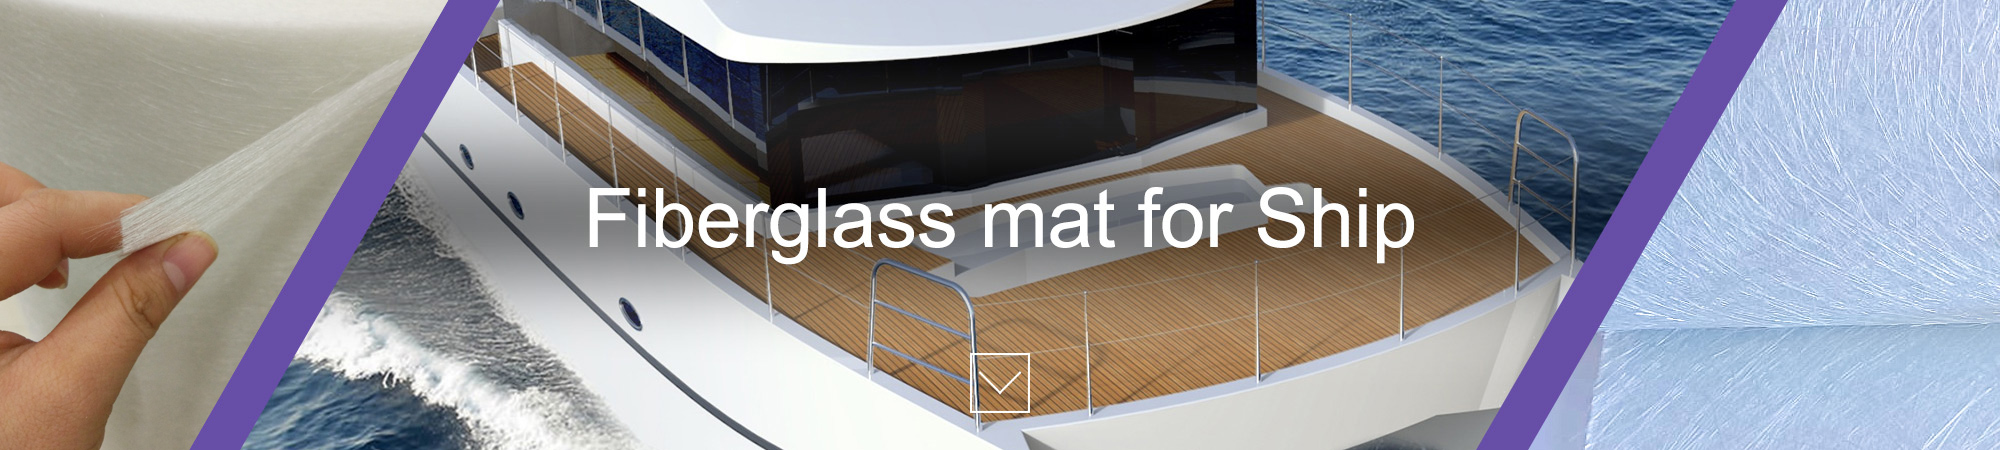 fiberglass mat for ship